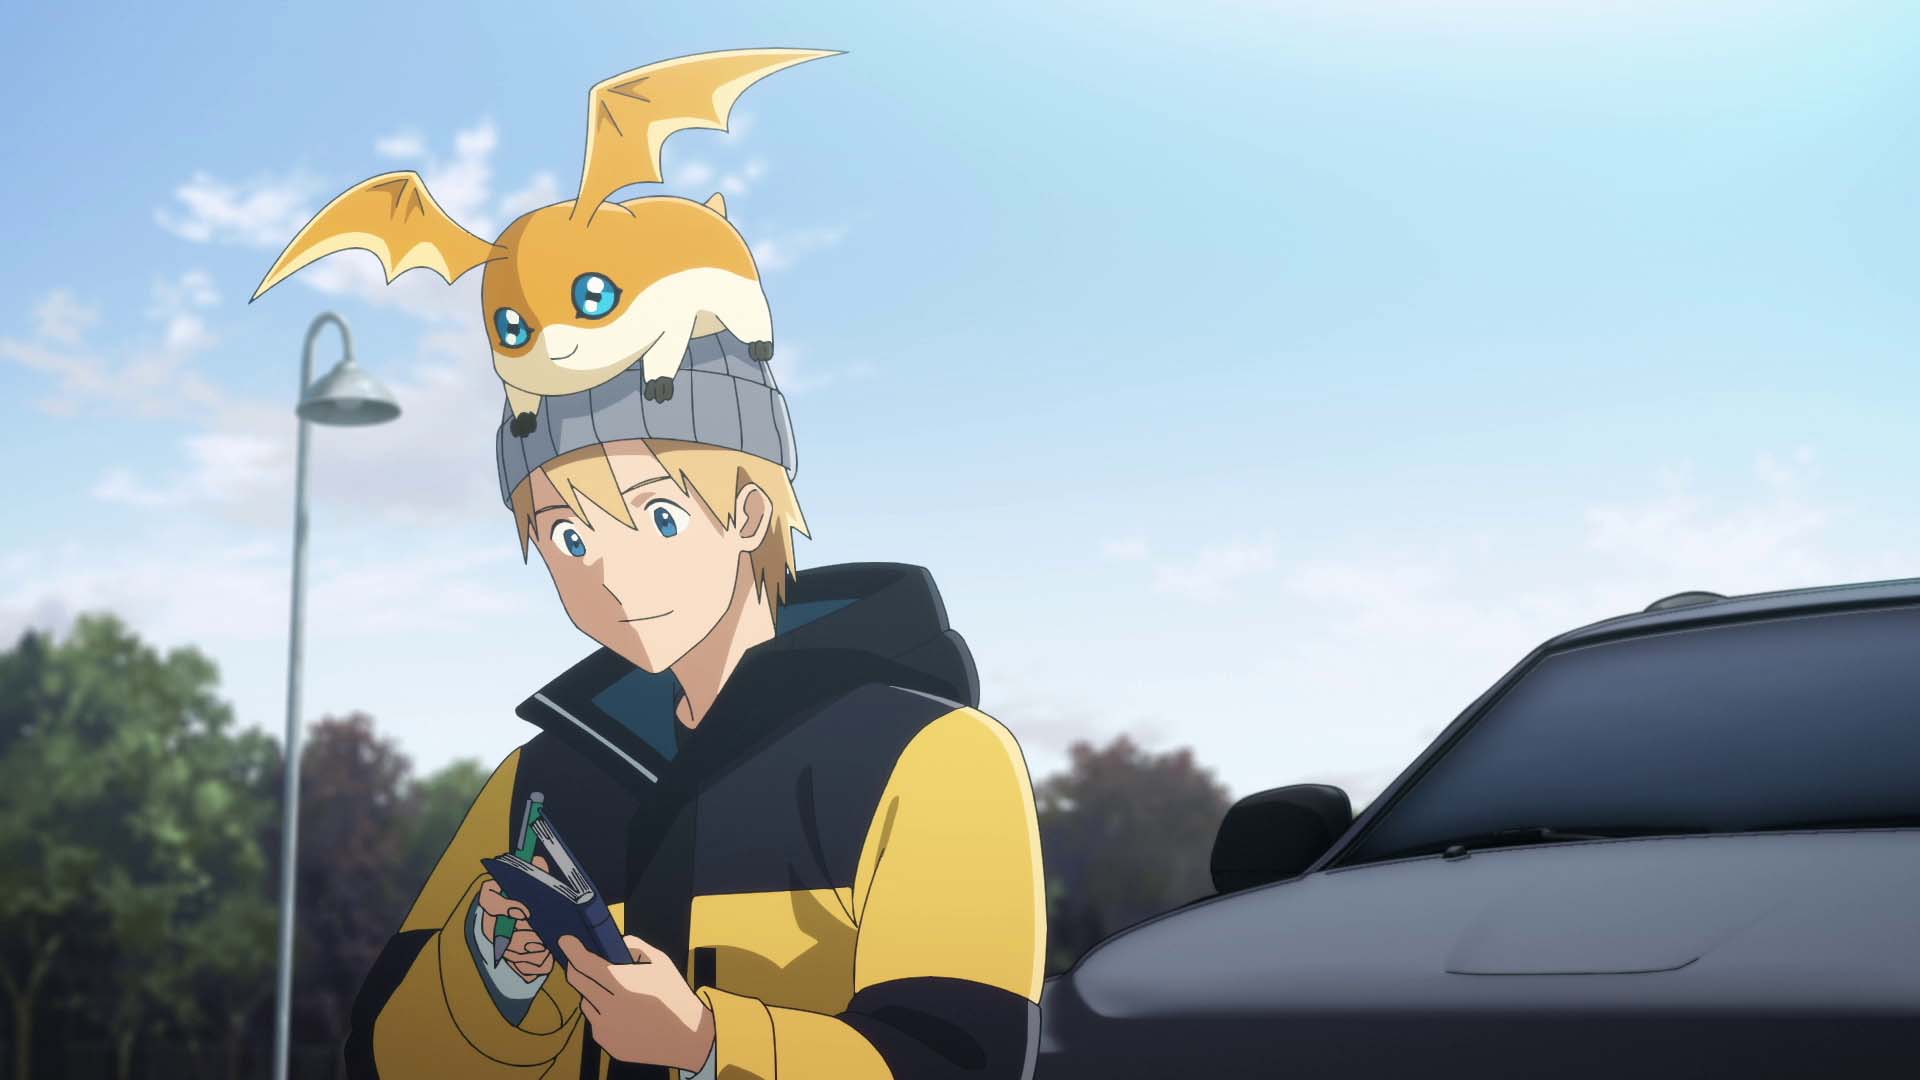 Digimon Adventure: Last Evolution Kizuna' Arrives on Digital